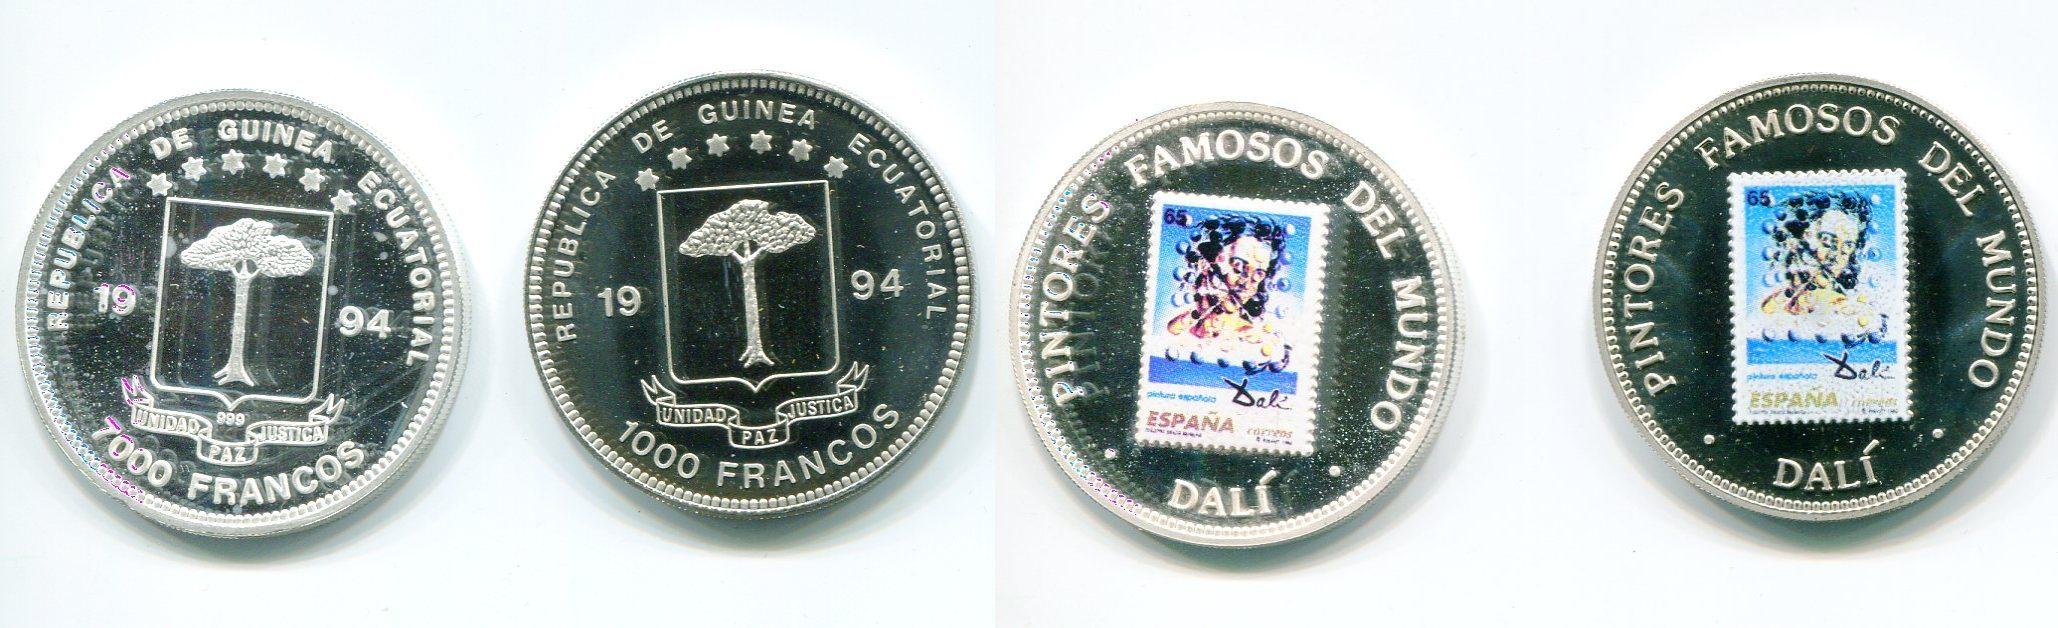 Foto Äquatorialguinea 1000 und 7000 Franc 1994 foto 787708